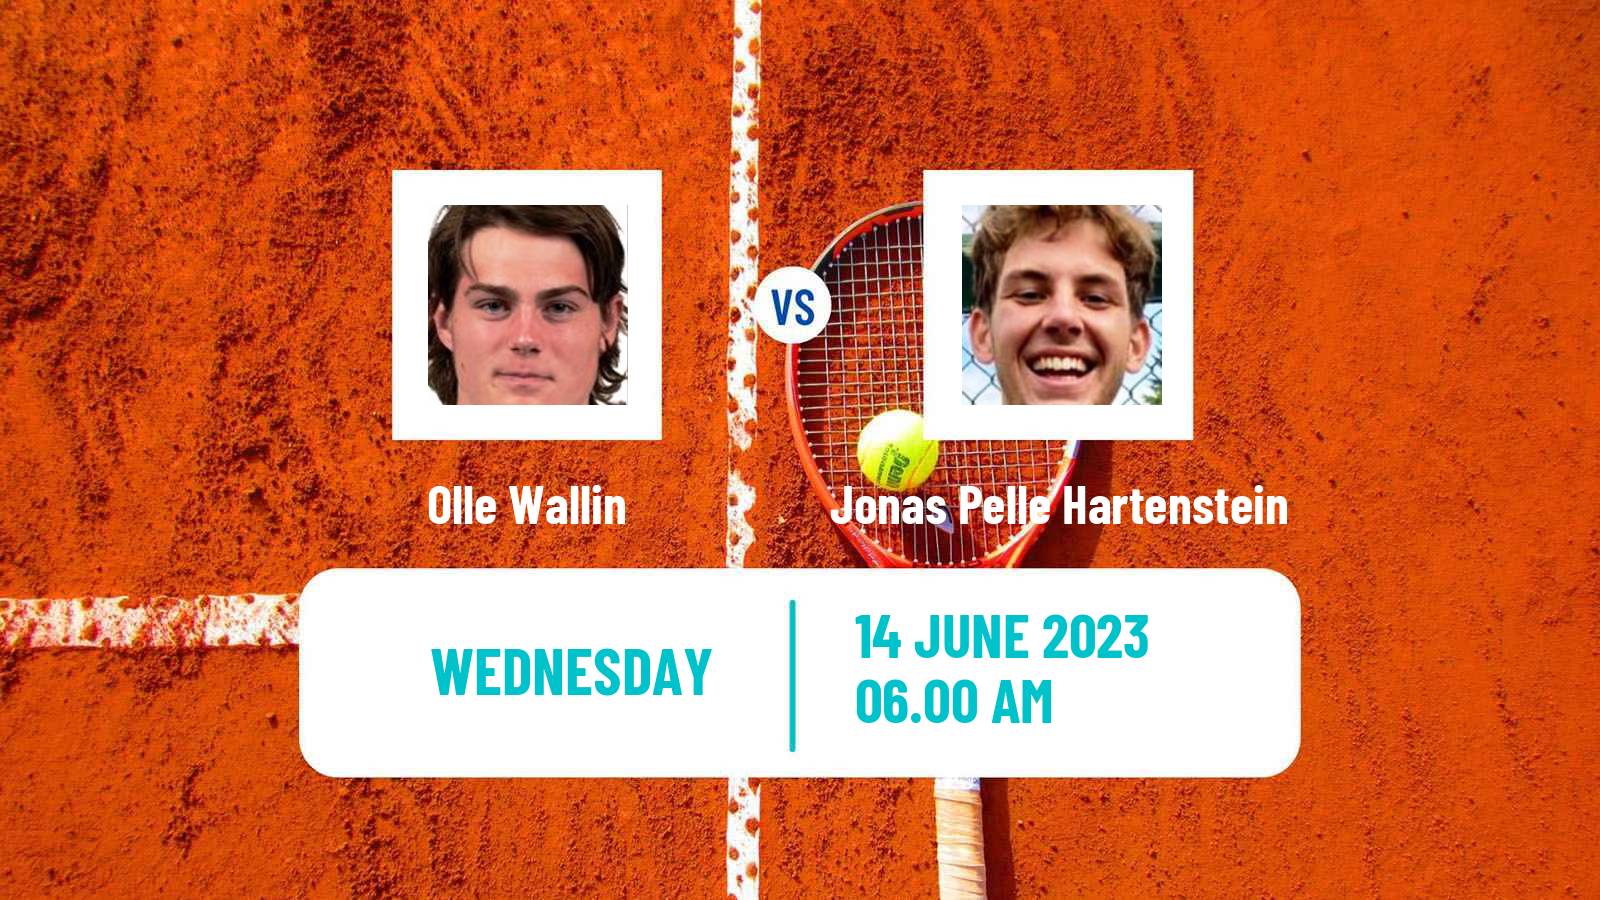 Tennis ITF M25 Risskov Aarhus Men Olle Wallin - Jonas Pelle Hartenstein